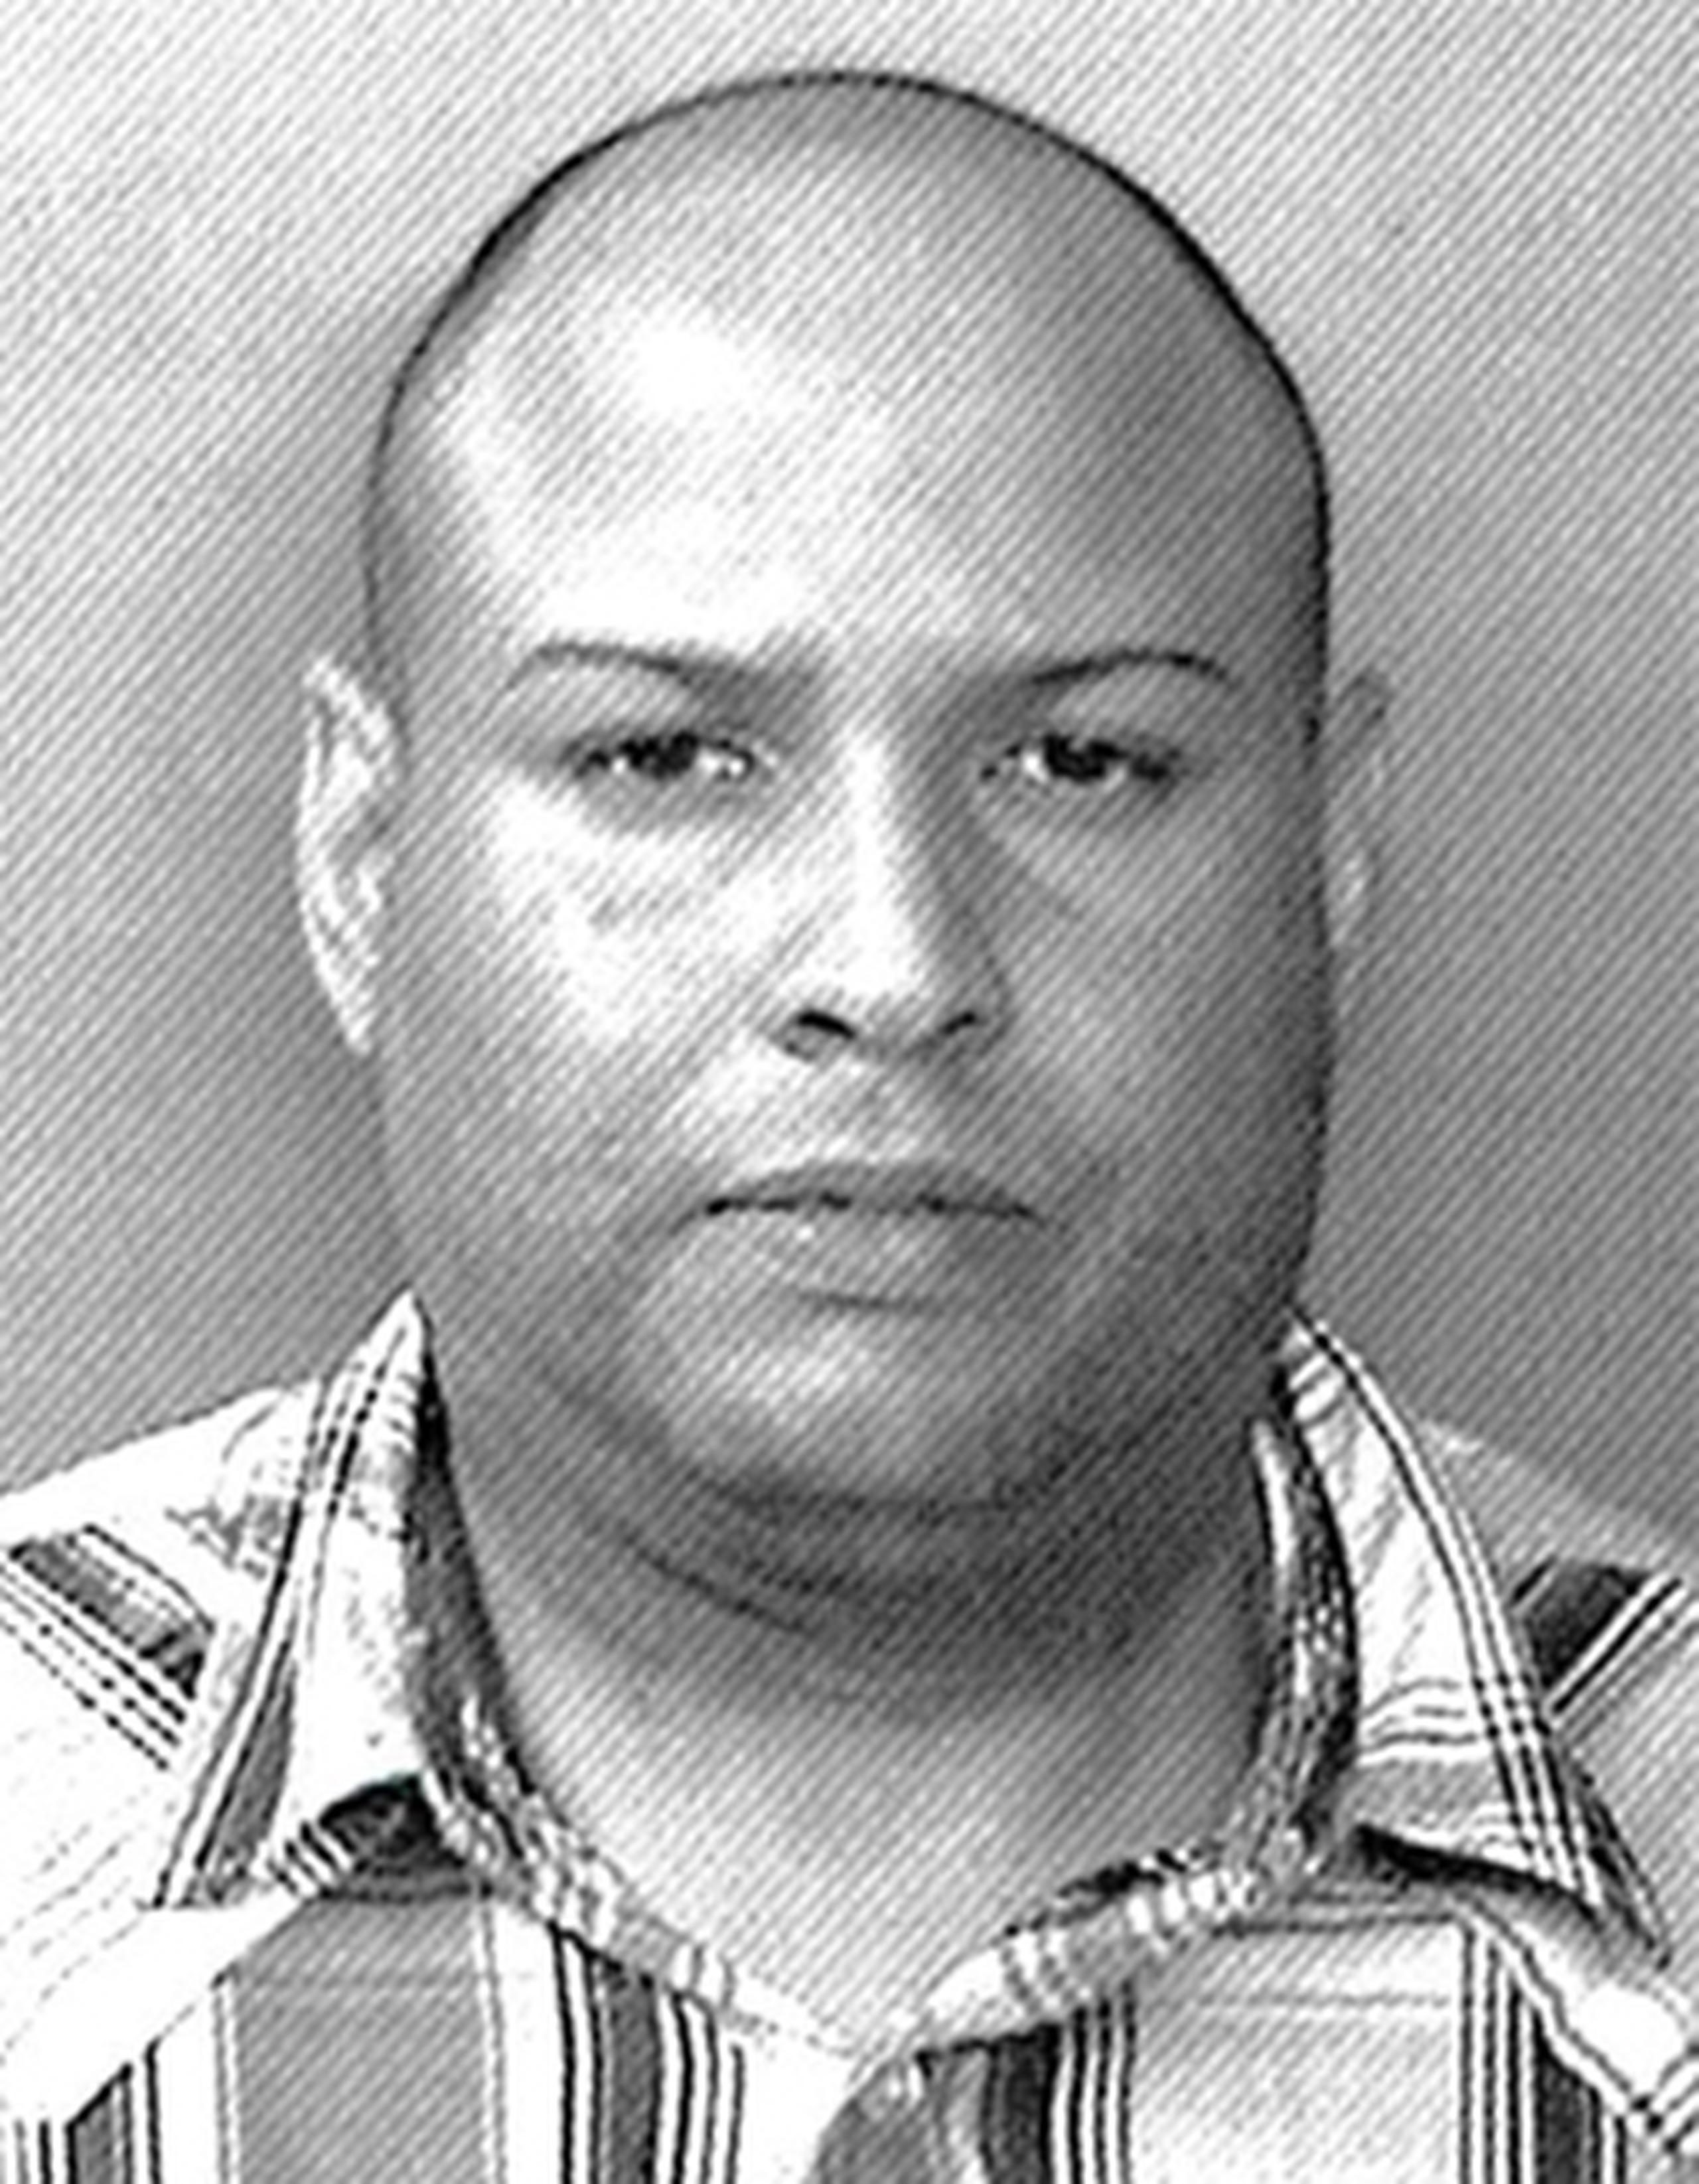 A Stuart Martínez de 36 años, se le radicaron cargos por los delitos de robo y violación a la Ley de Armas señalándole una fianza de $1, 000,600 la cual no prestó. (Suministrada)